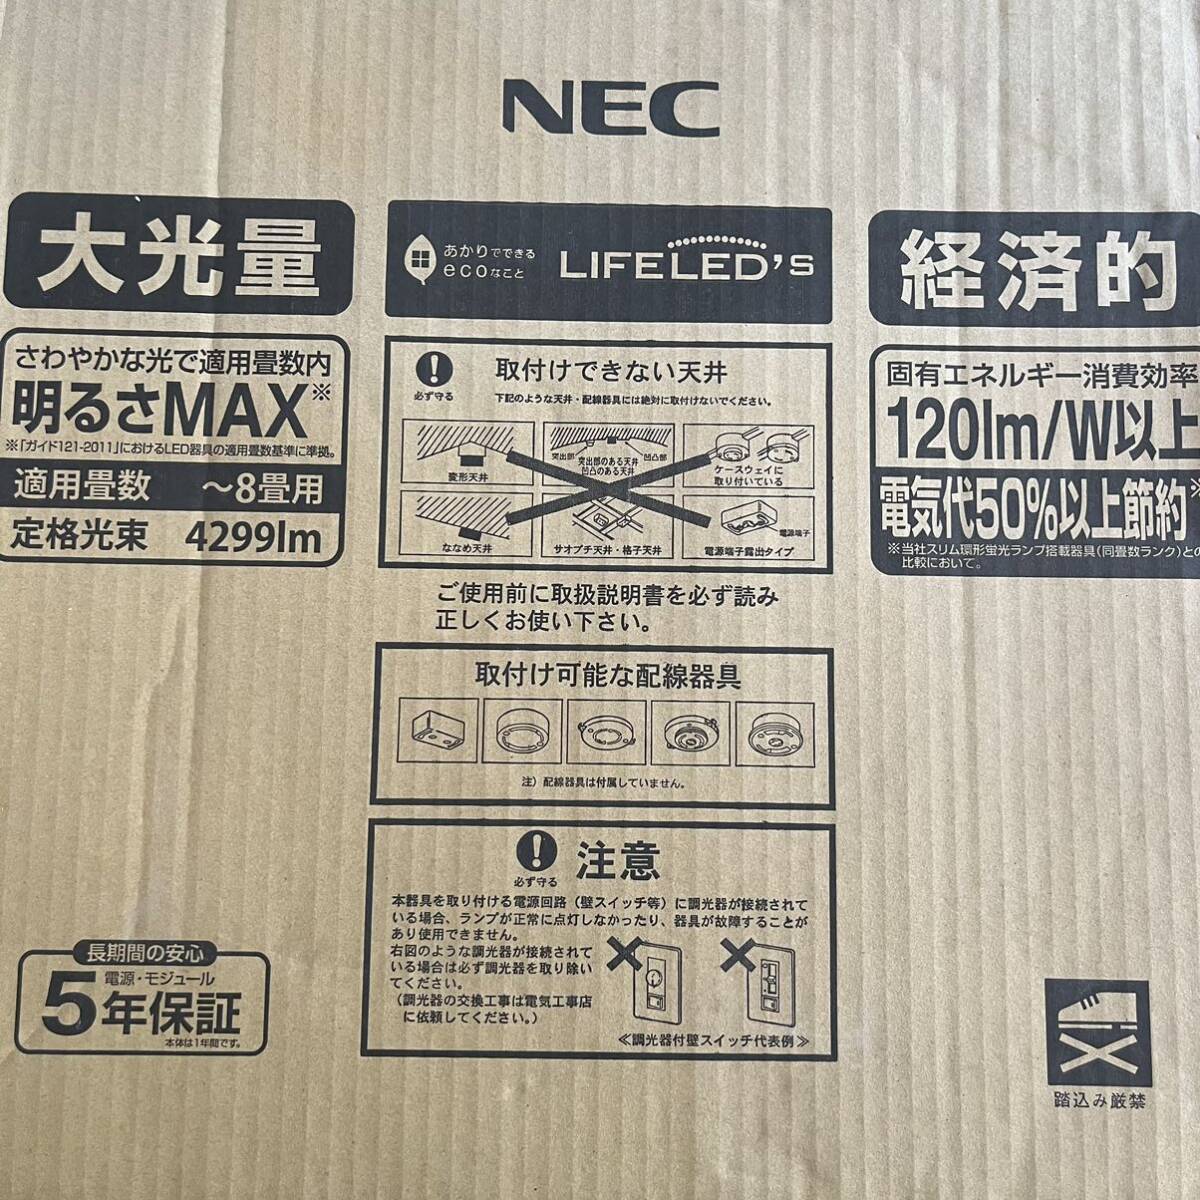 NEC LEDシーリングライト HLDDZB0855 調光機能付 リモコン付 ～8畳用 定格光束4299lm 日本製 Made in Japan 虫が入りにくい防虫ガイドの画像1